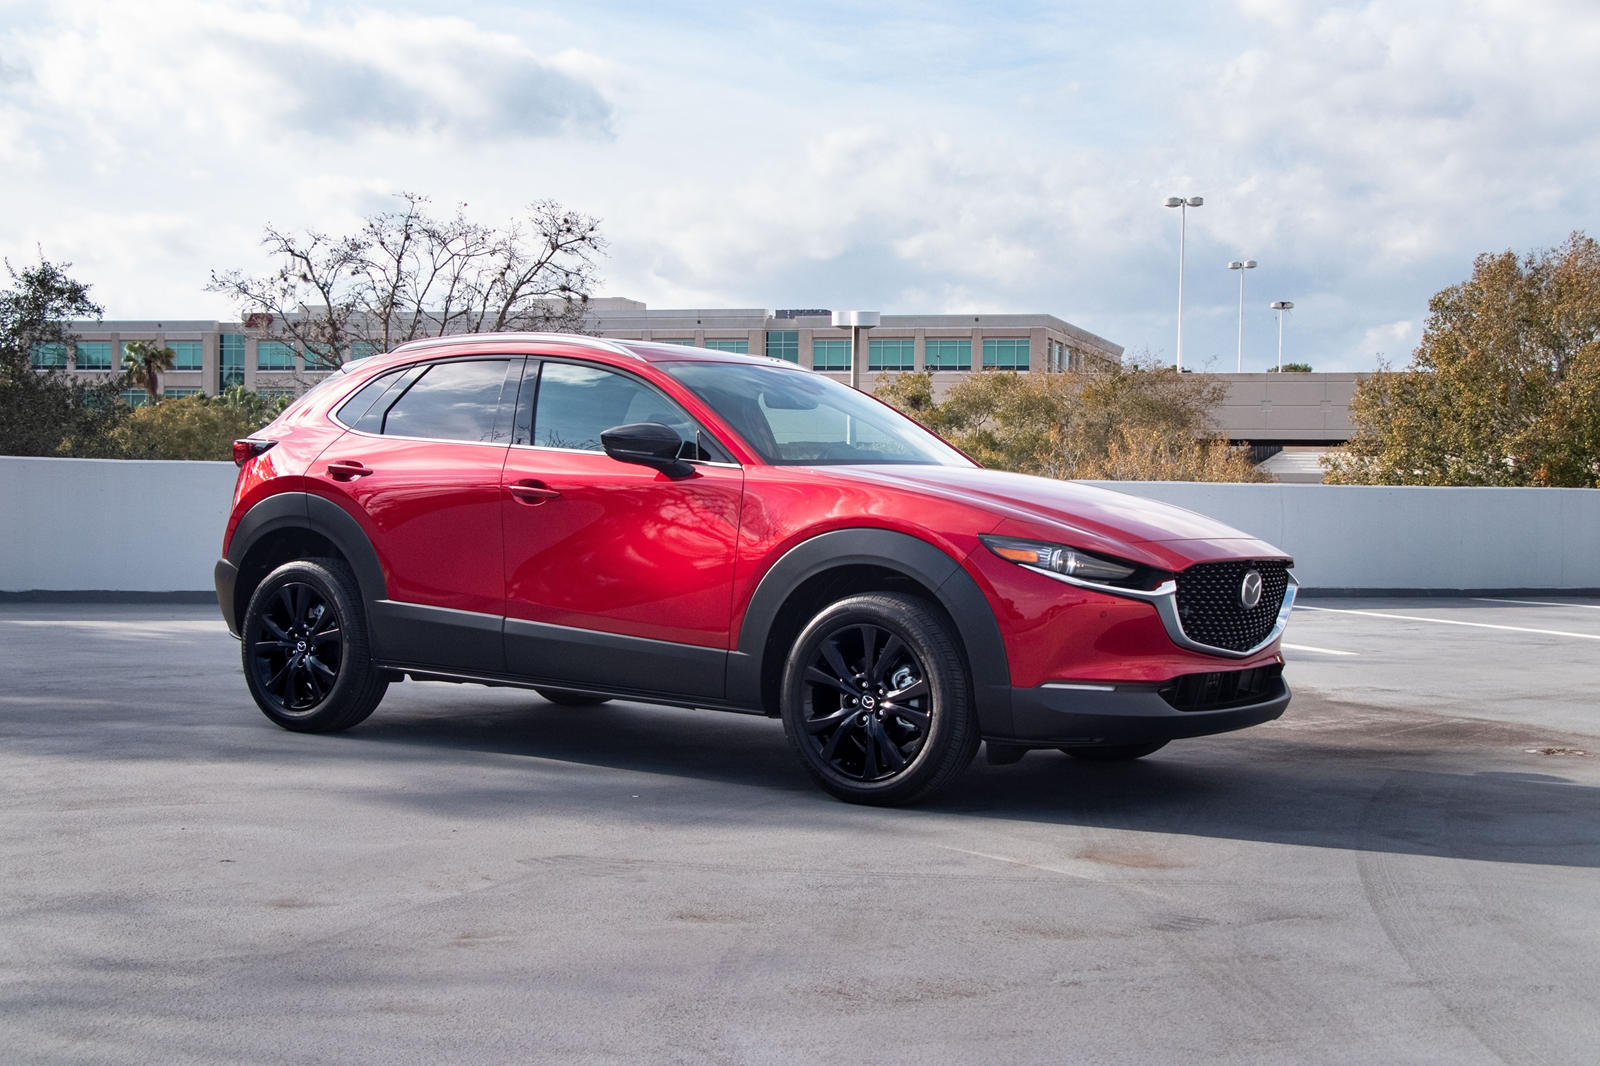 Mazda заявляет, что эти «стильные диски созданы с использованием наших высокотехнологичных процессов литья из сплавов», что означает, что они, вероятно, легче стандартных 18-дюймовых. Однако не стоит слишком волноваться, потому что эти колеса еще дор